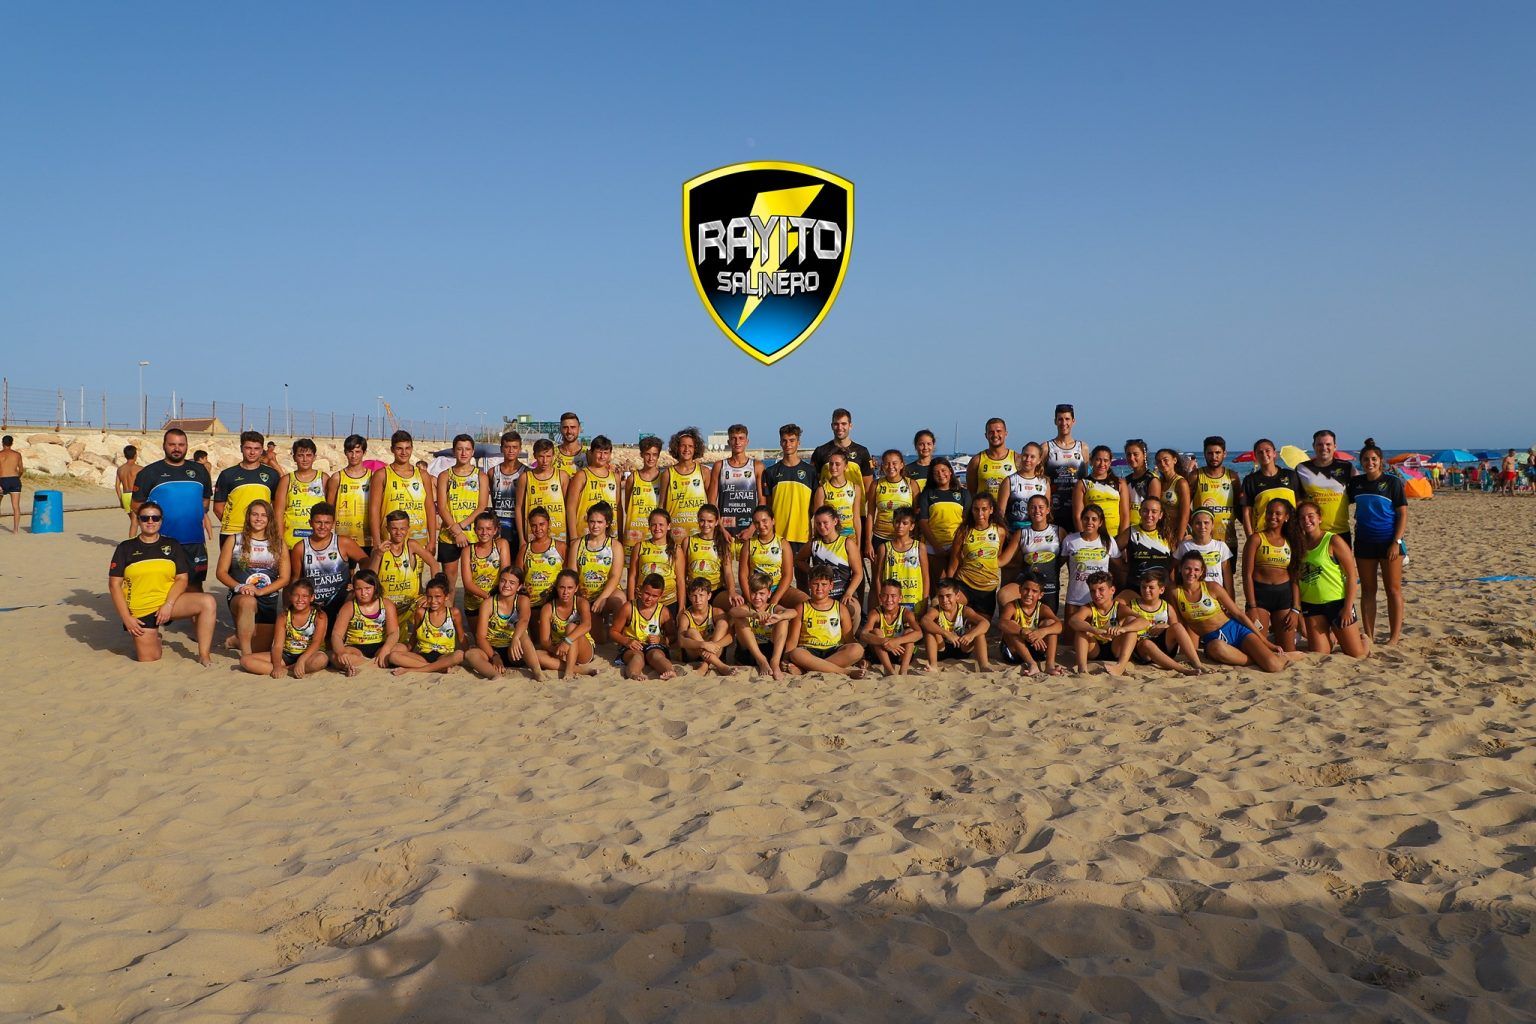 foto grupal de jugadores y entrenadores del CBMP Rayito Salinero en la playa con el escudo del club en el cielo